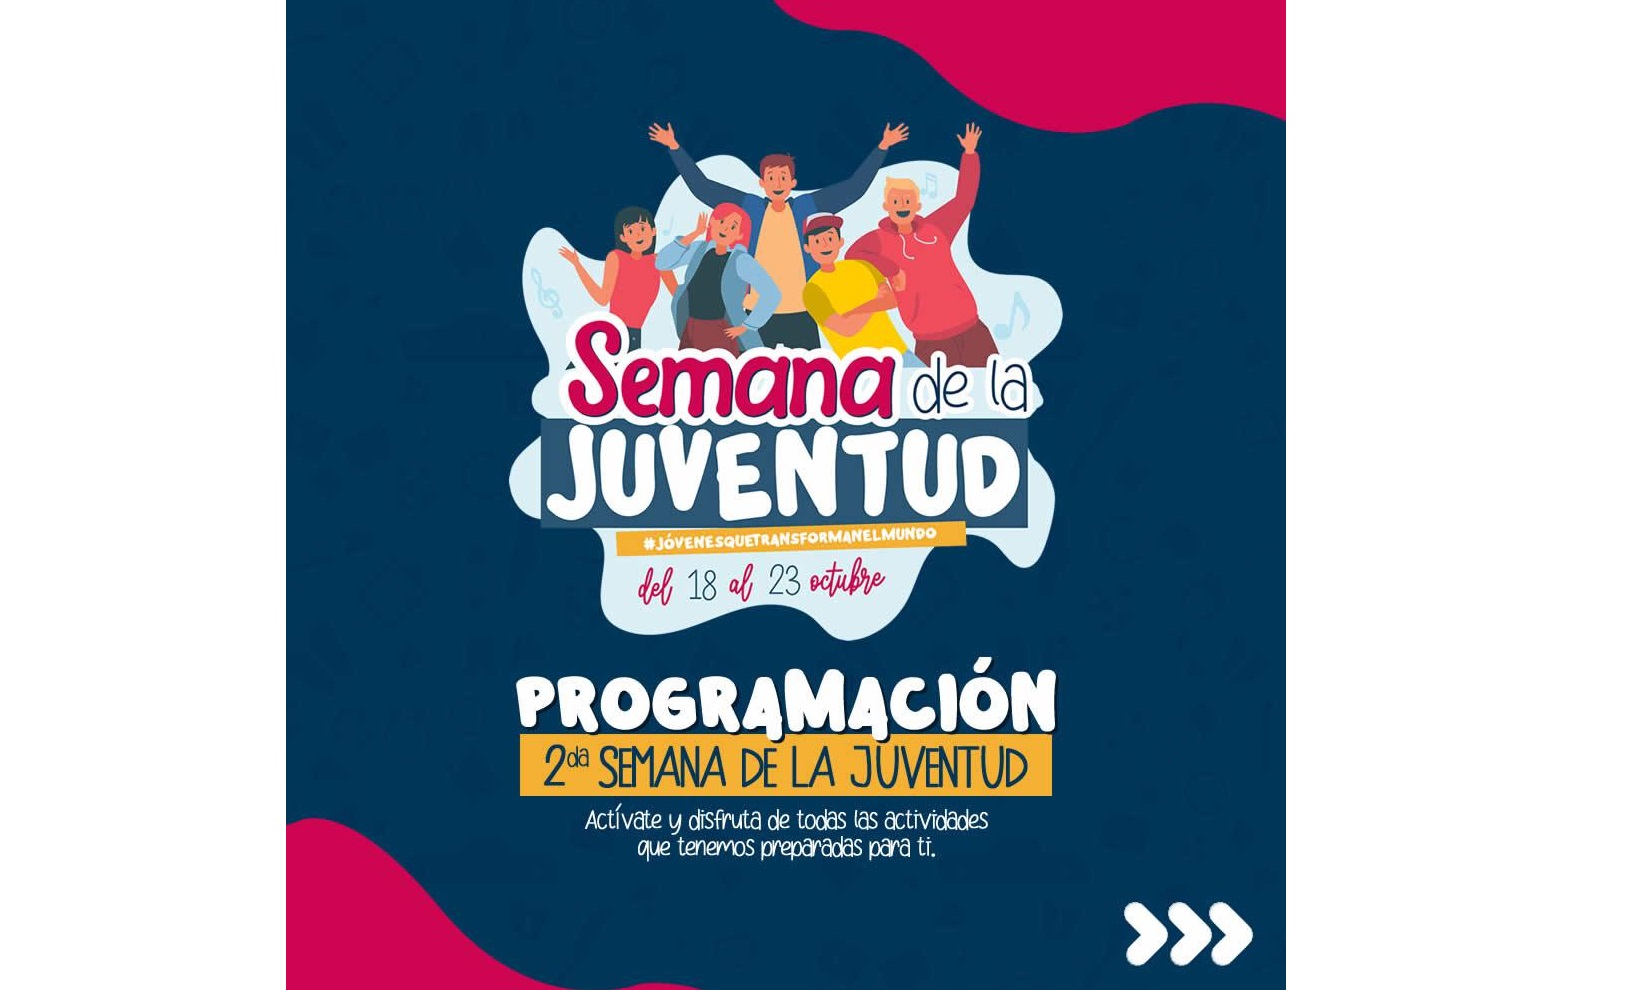 Conozca la programación oficial de la Segunda Semana de la Juventud en San Pelayo